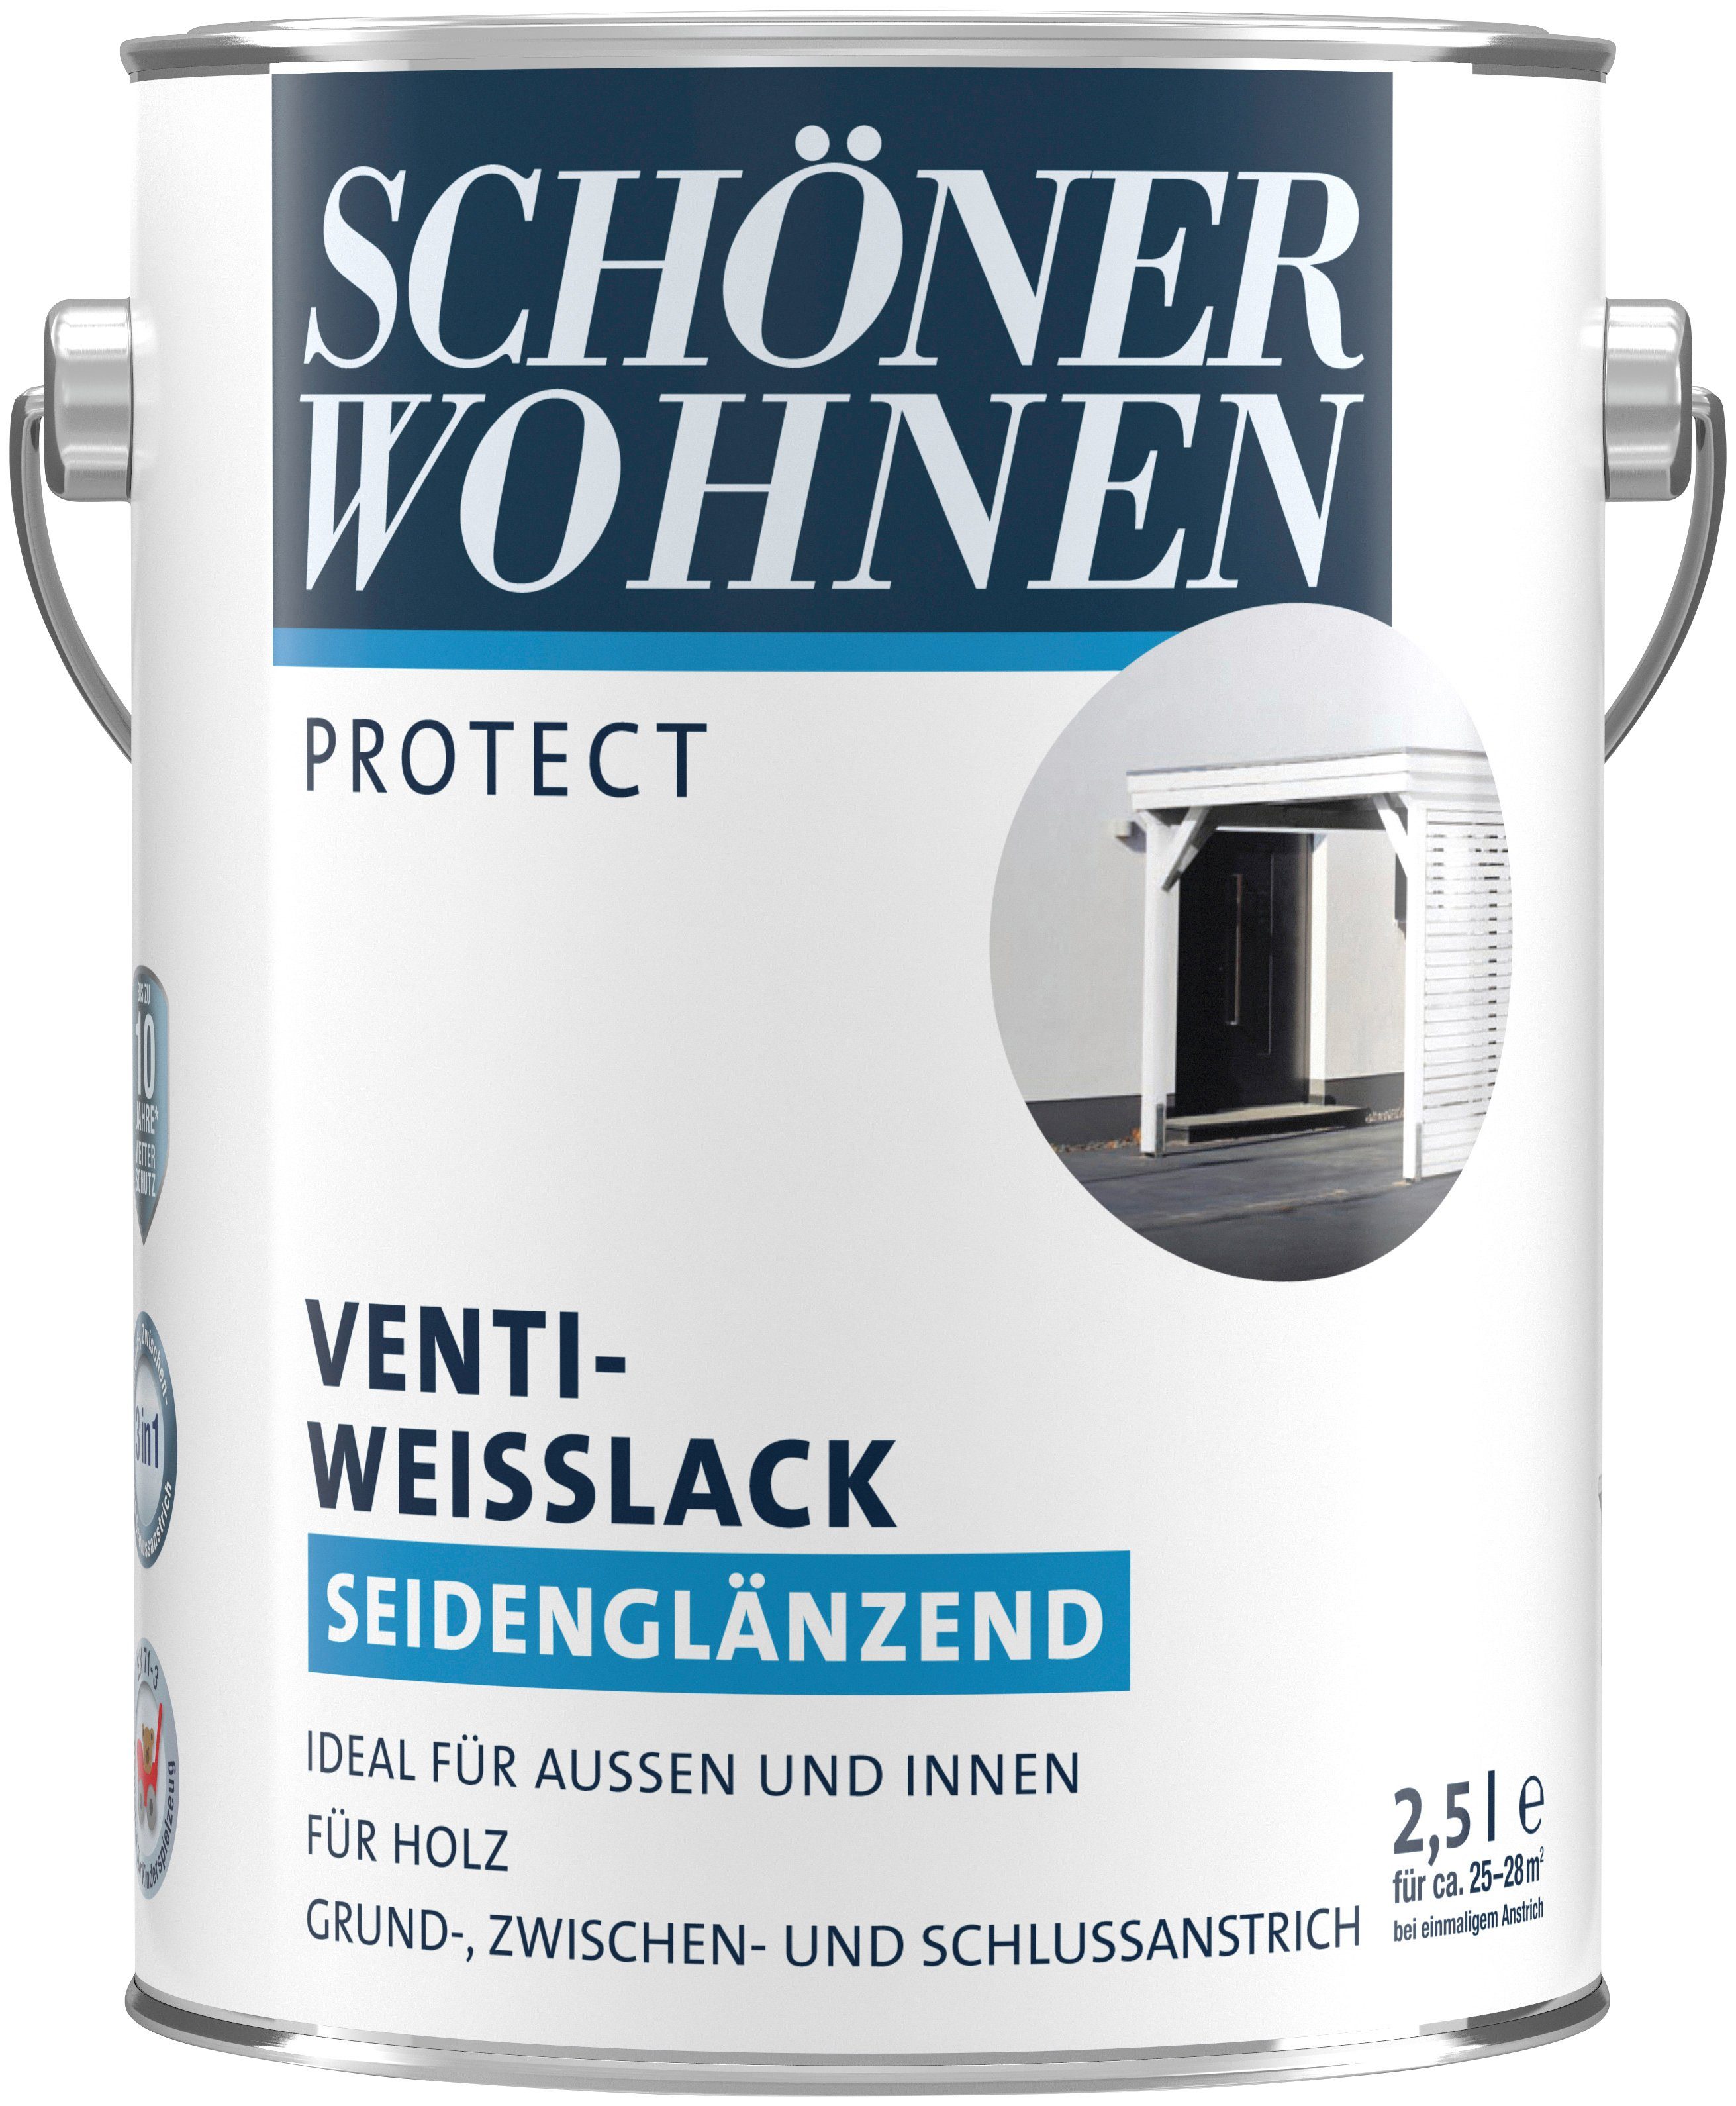 SCHÖNER WOHNEN FARBE Weißlack seidenglänzend, Venti-Weisslack, für Anstrich außen 3-in-1 innen, Protect 2,5 und Liter